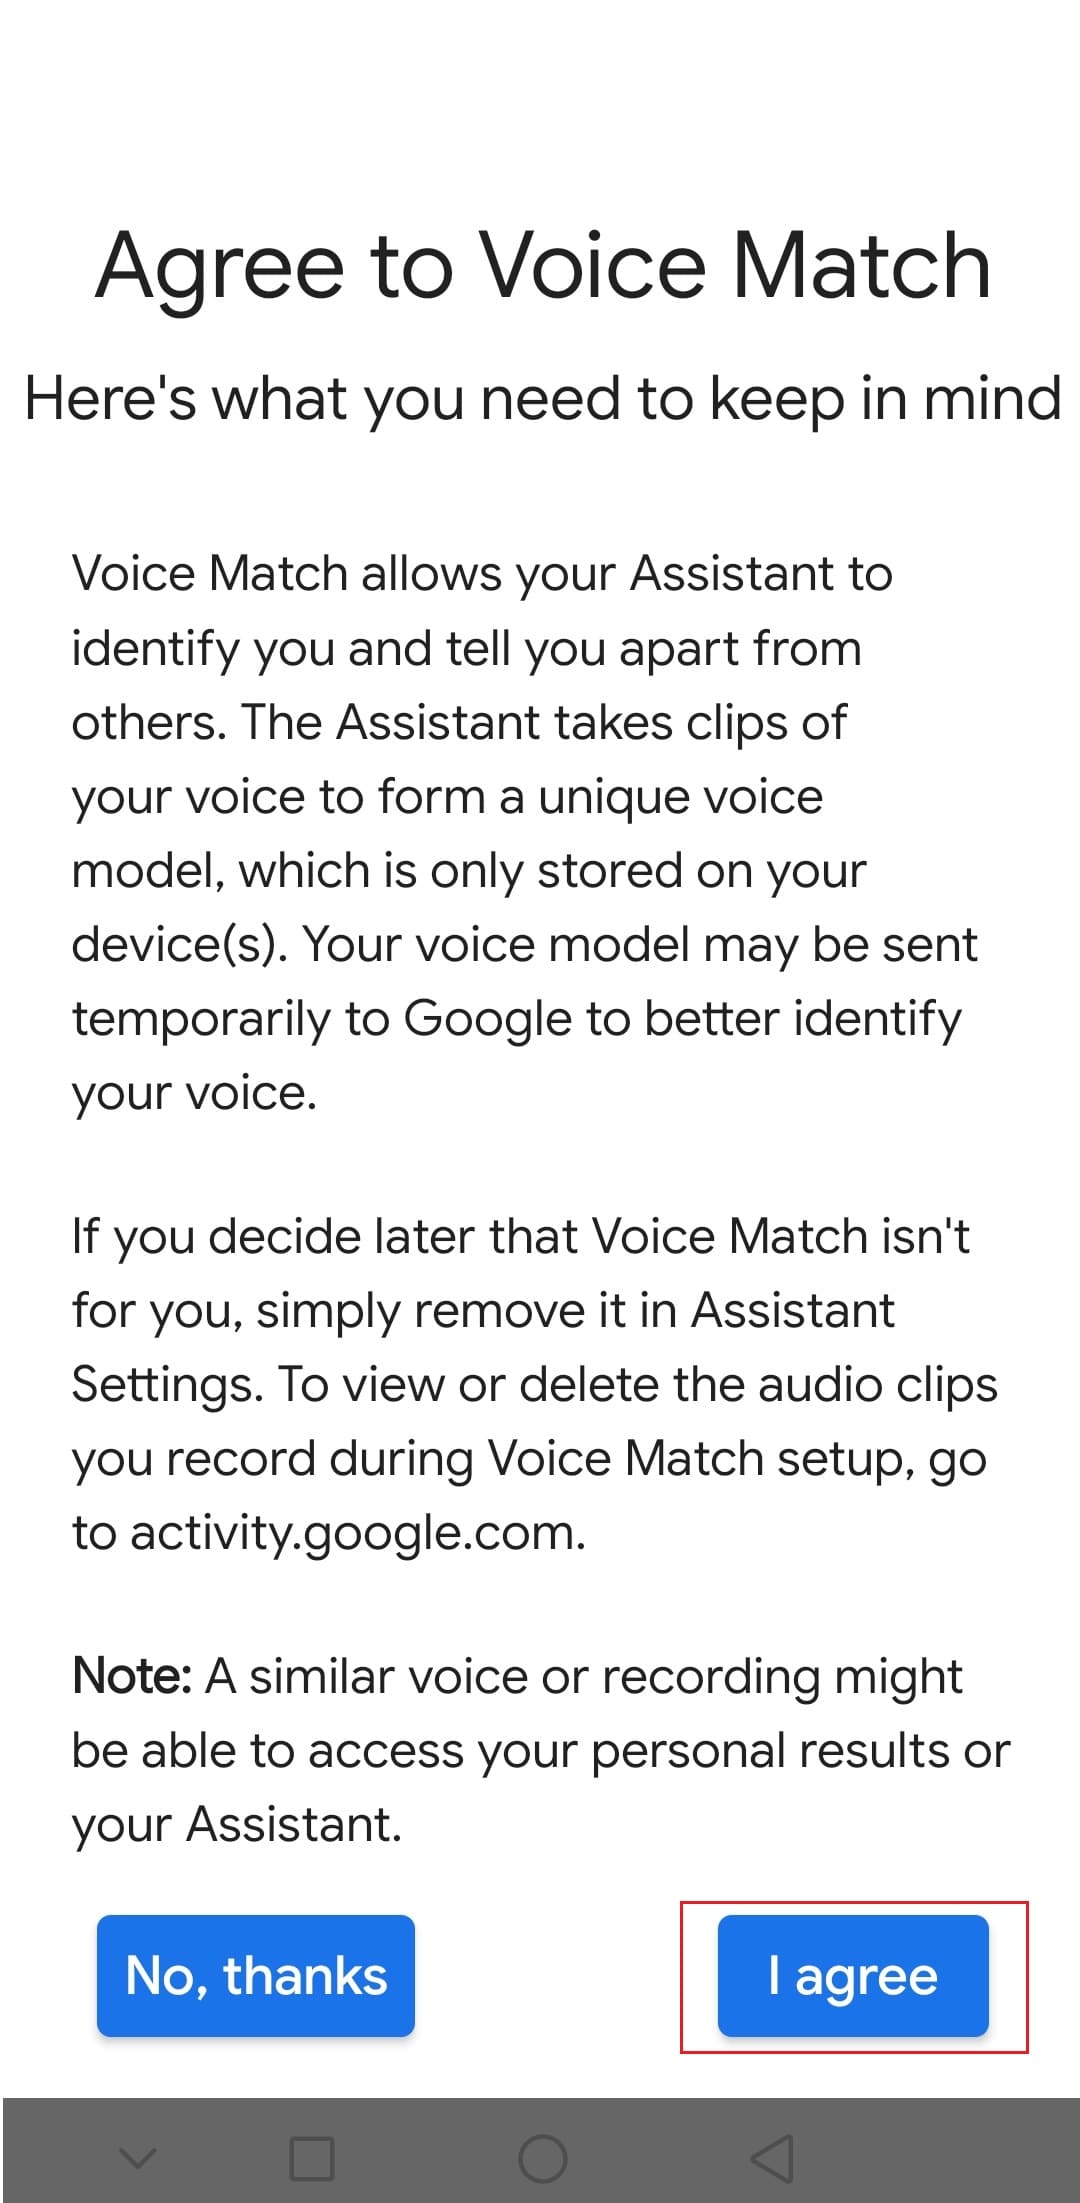 toque na opção Concordo para concordar com o Voice Match no aplicativo Google Android